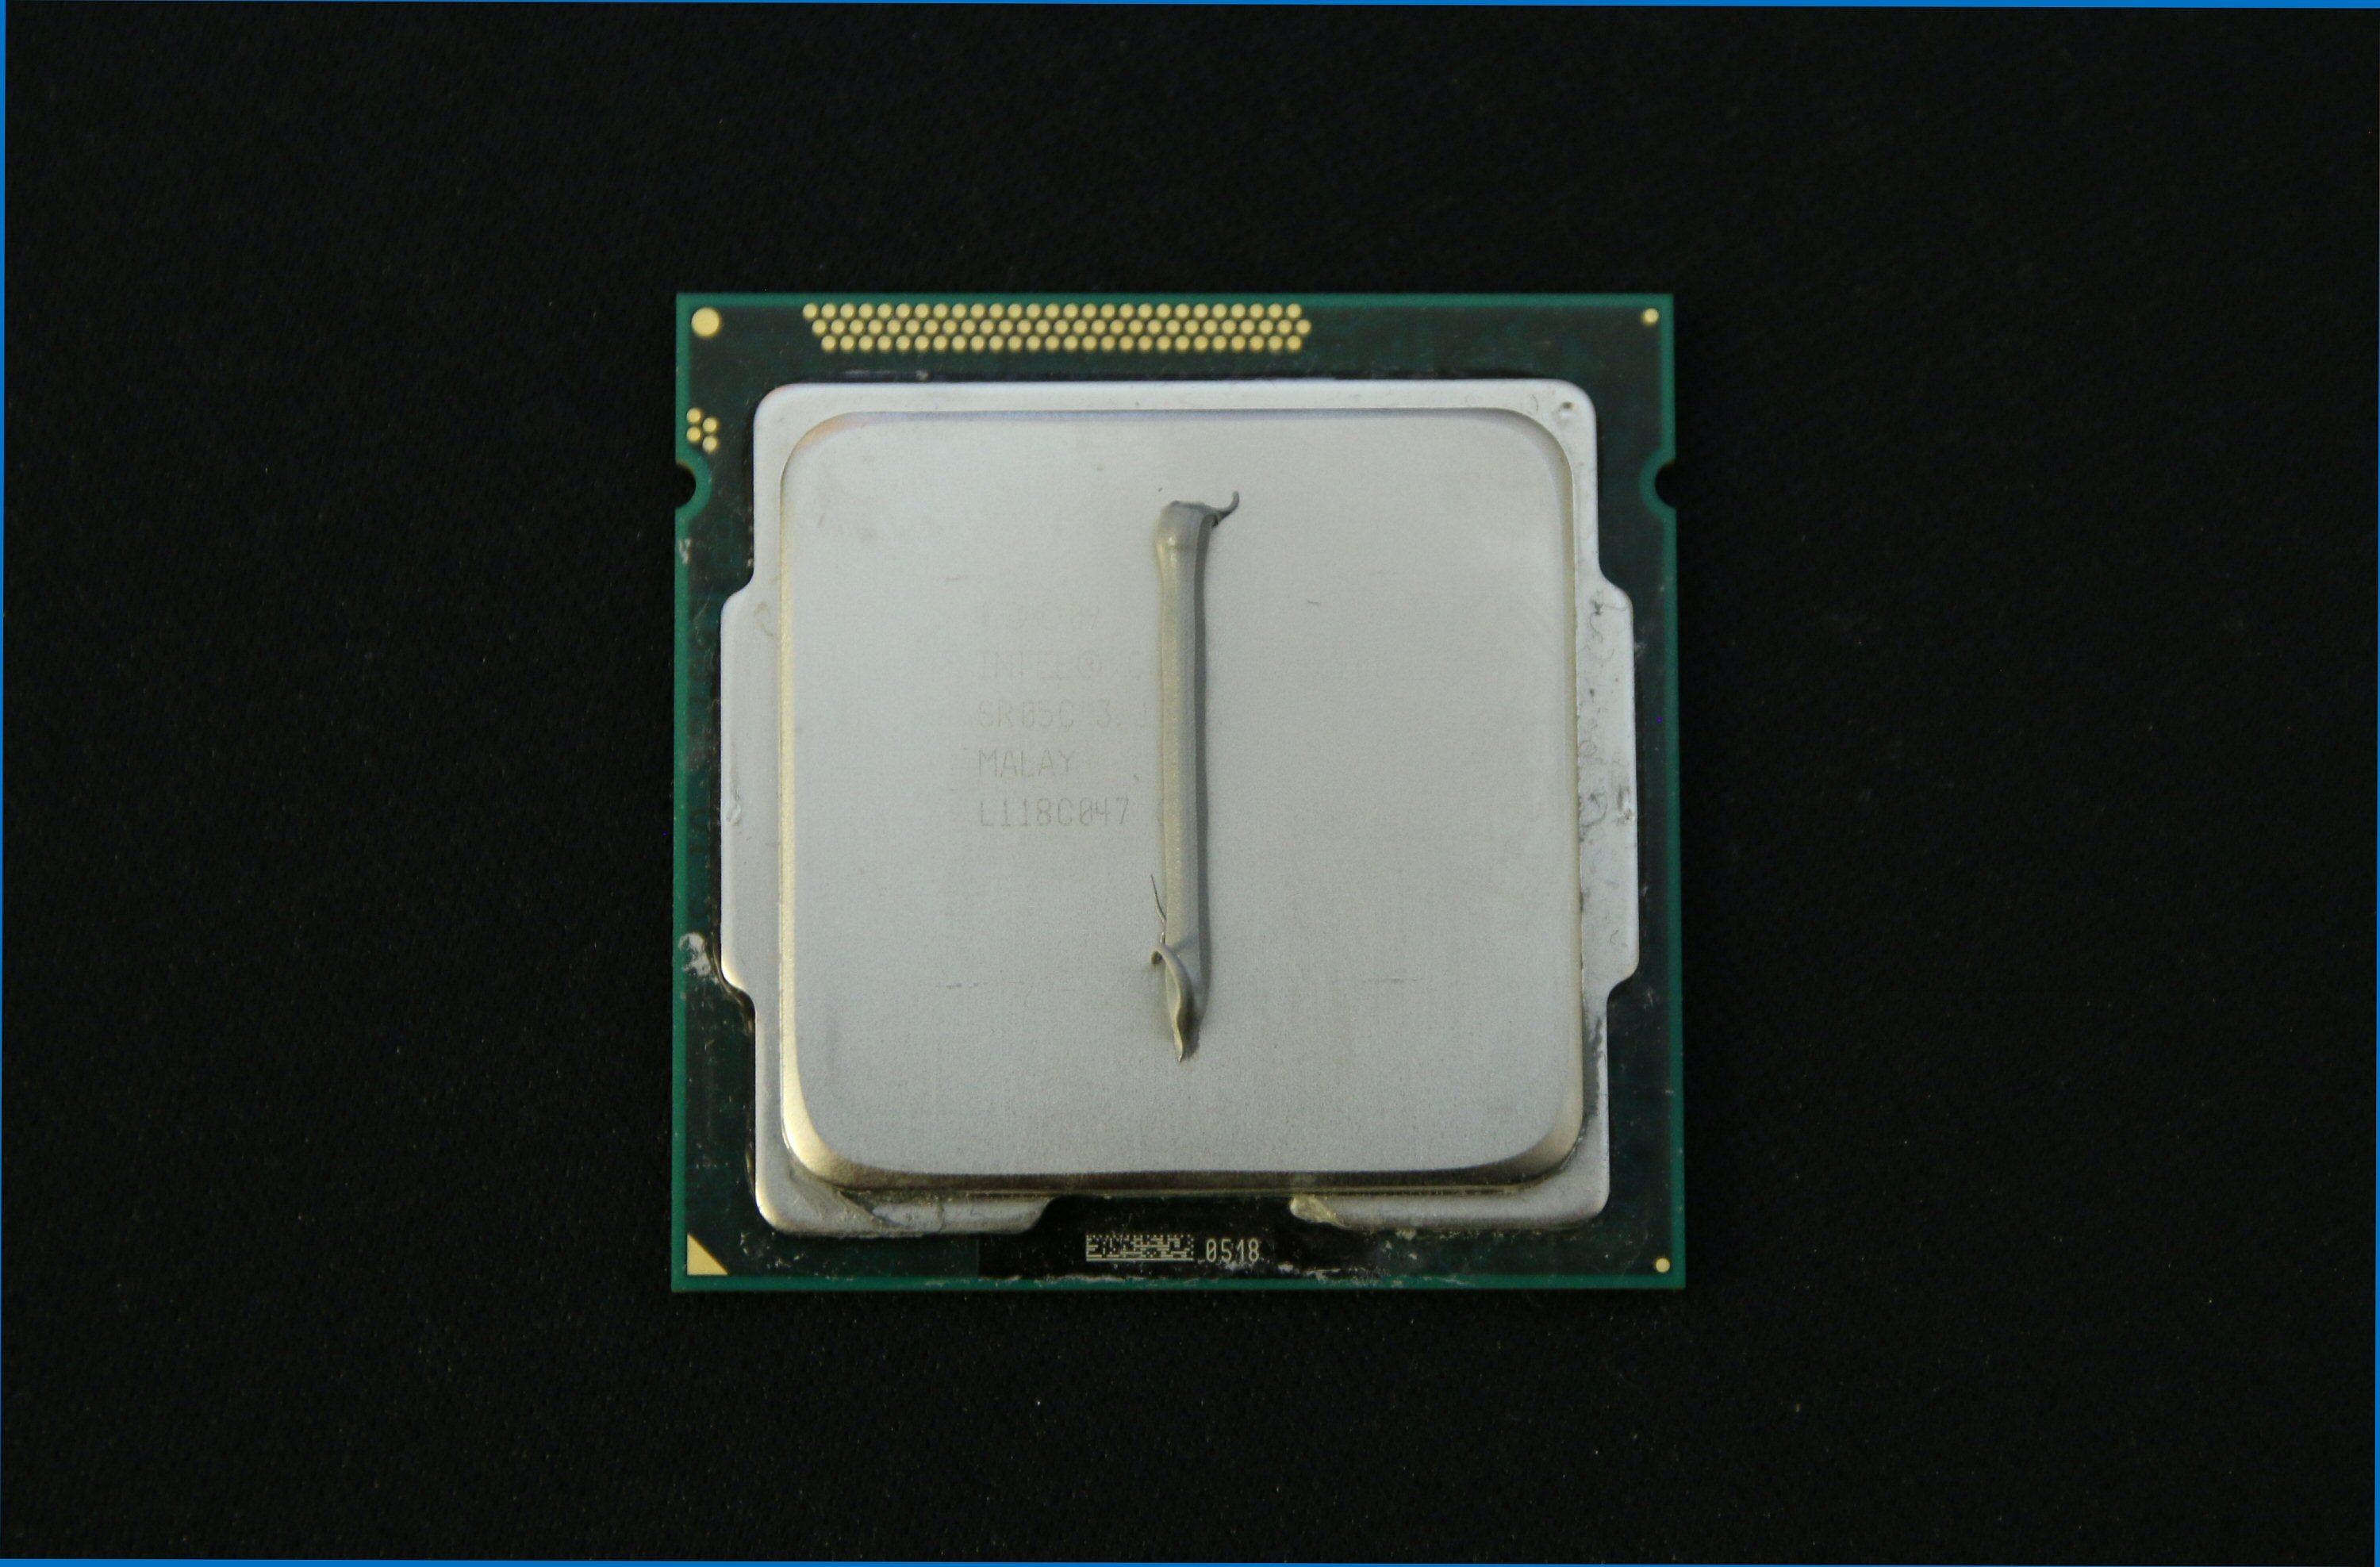 Slik skal stripa legges på de fleste Intel-prosessorer, ifølge Arctic Silver. Merk retningen i forhold til trekanten nede til venstre. Foto: Vegar Jansen, Tek.no